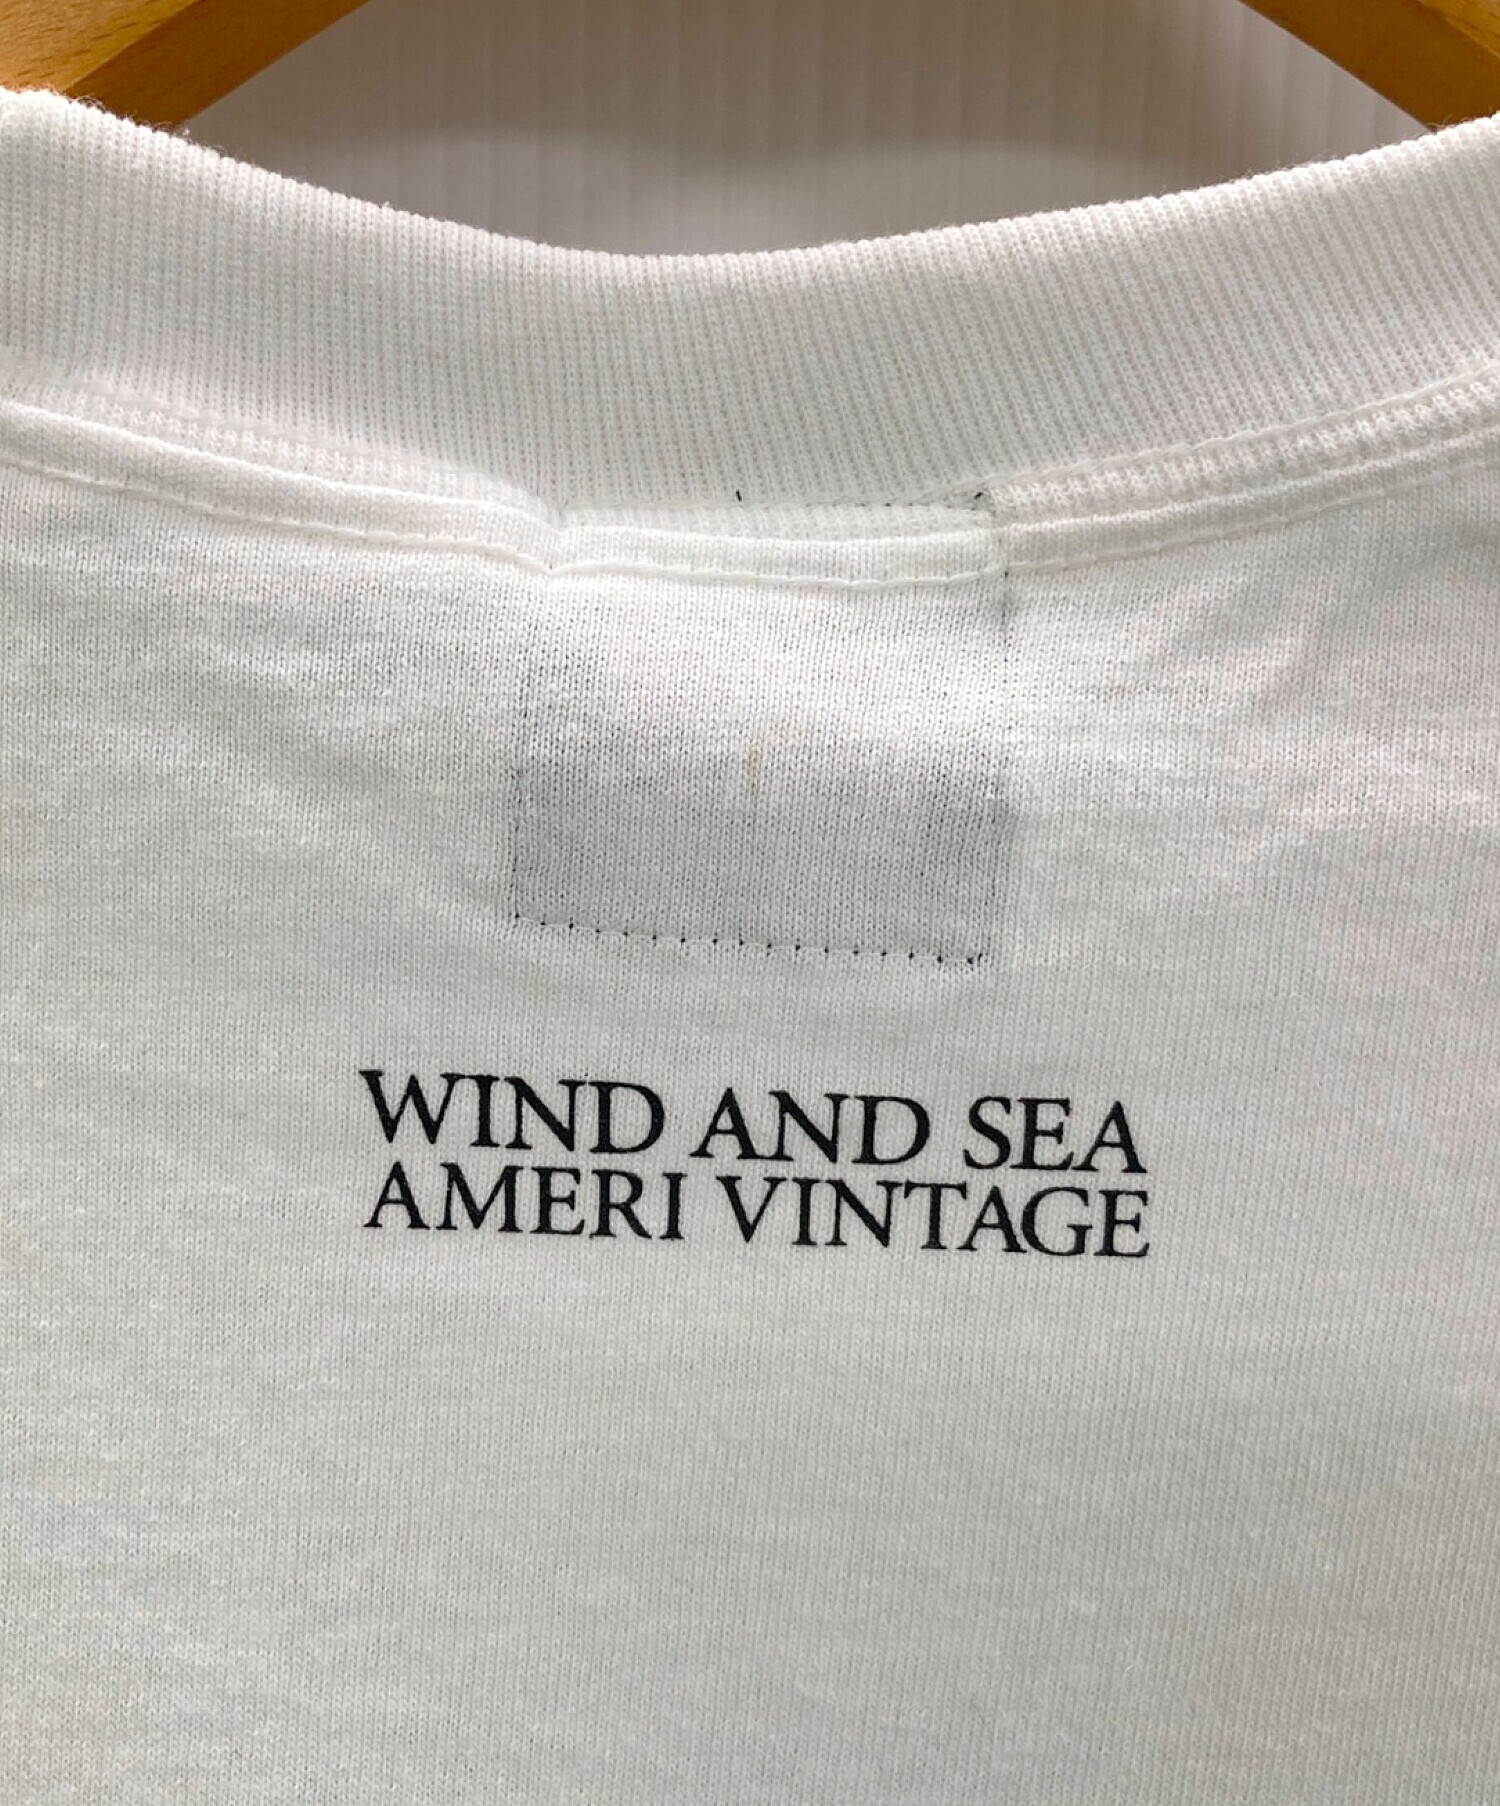 中古・古着通販】WIND AND SEA (ウィンダンシー) Ameri VINTAGE